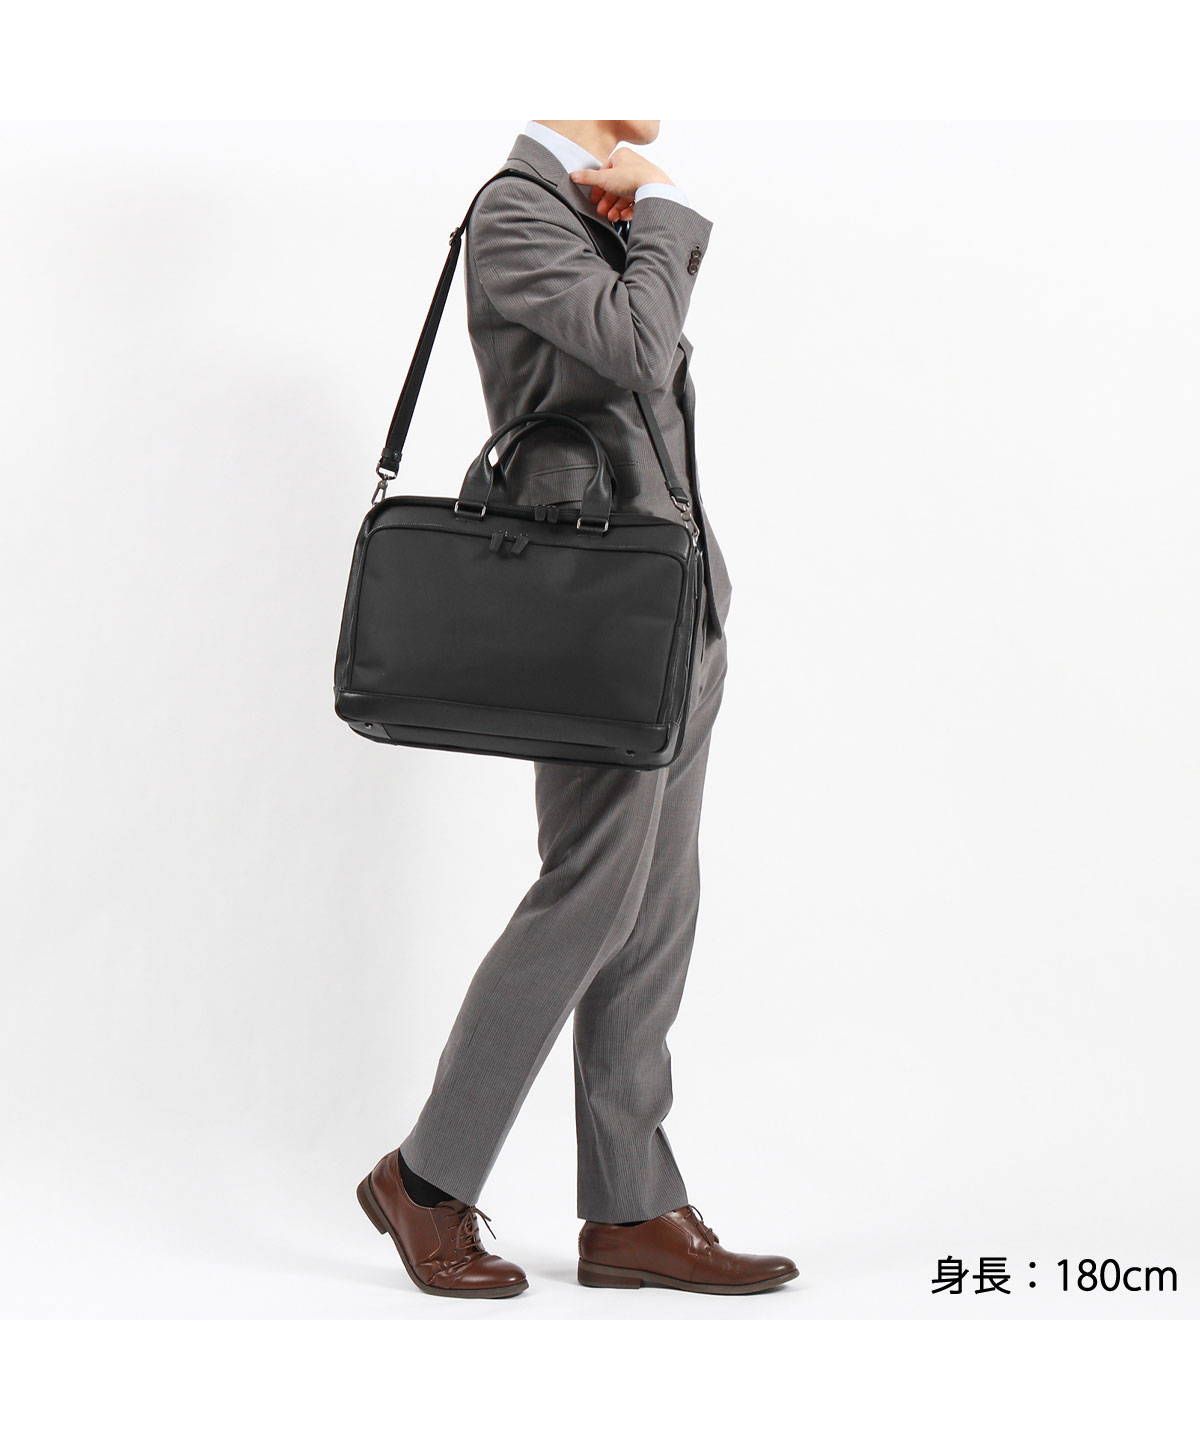 エースジーン(ACEGENE) |【日本正規品】 エースジーン ビジネスバッグ 